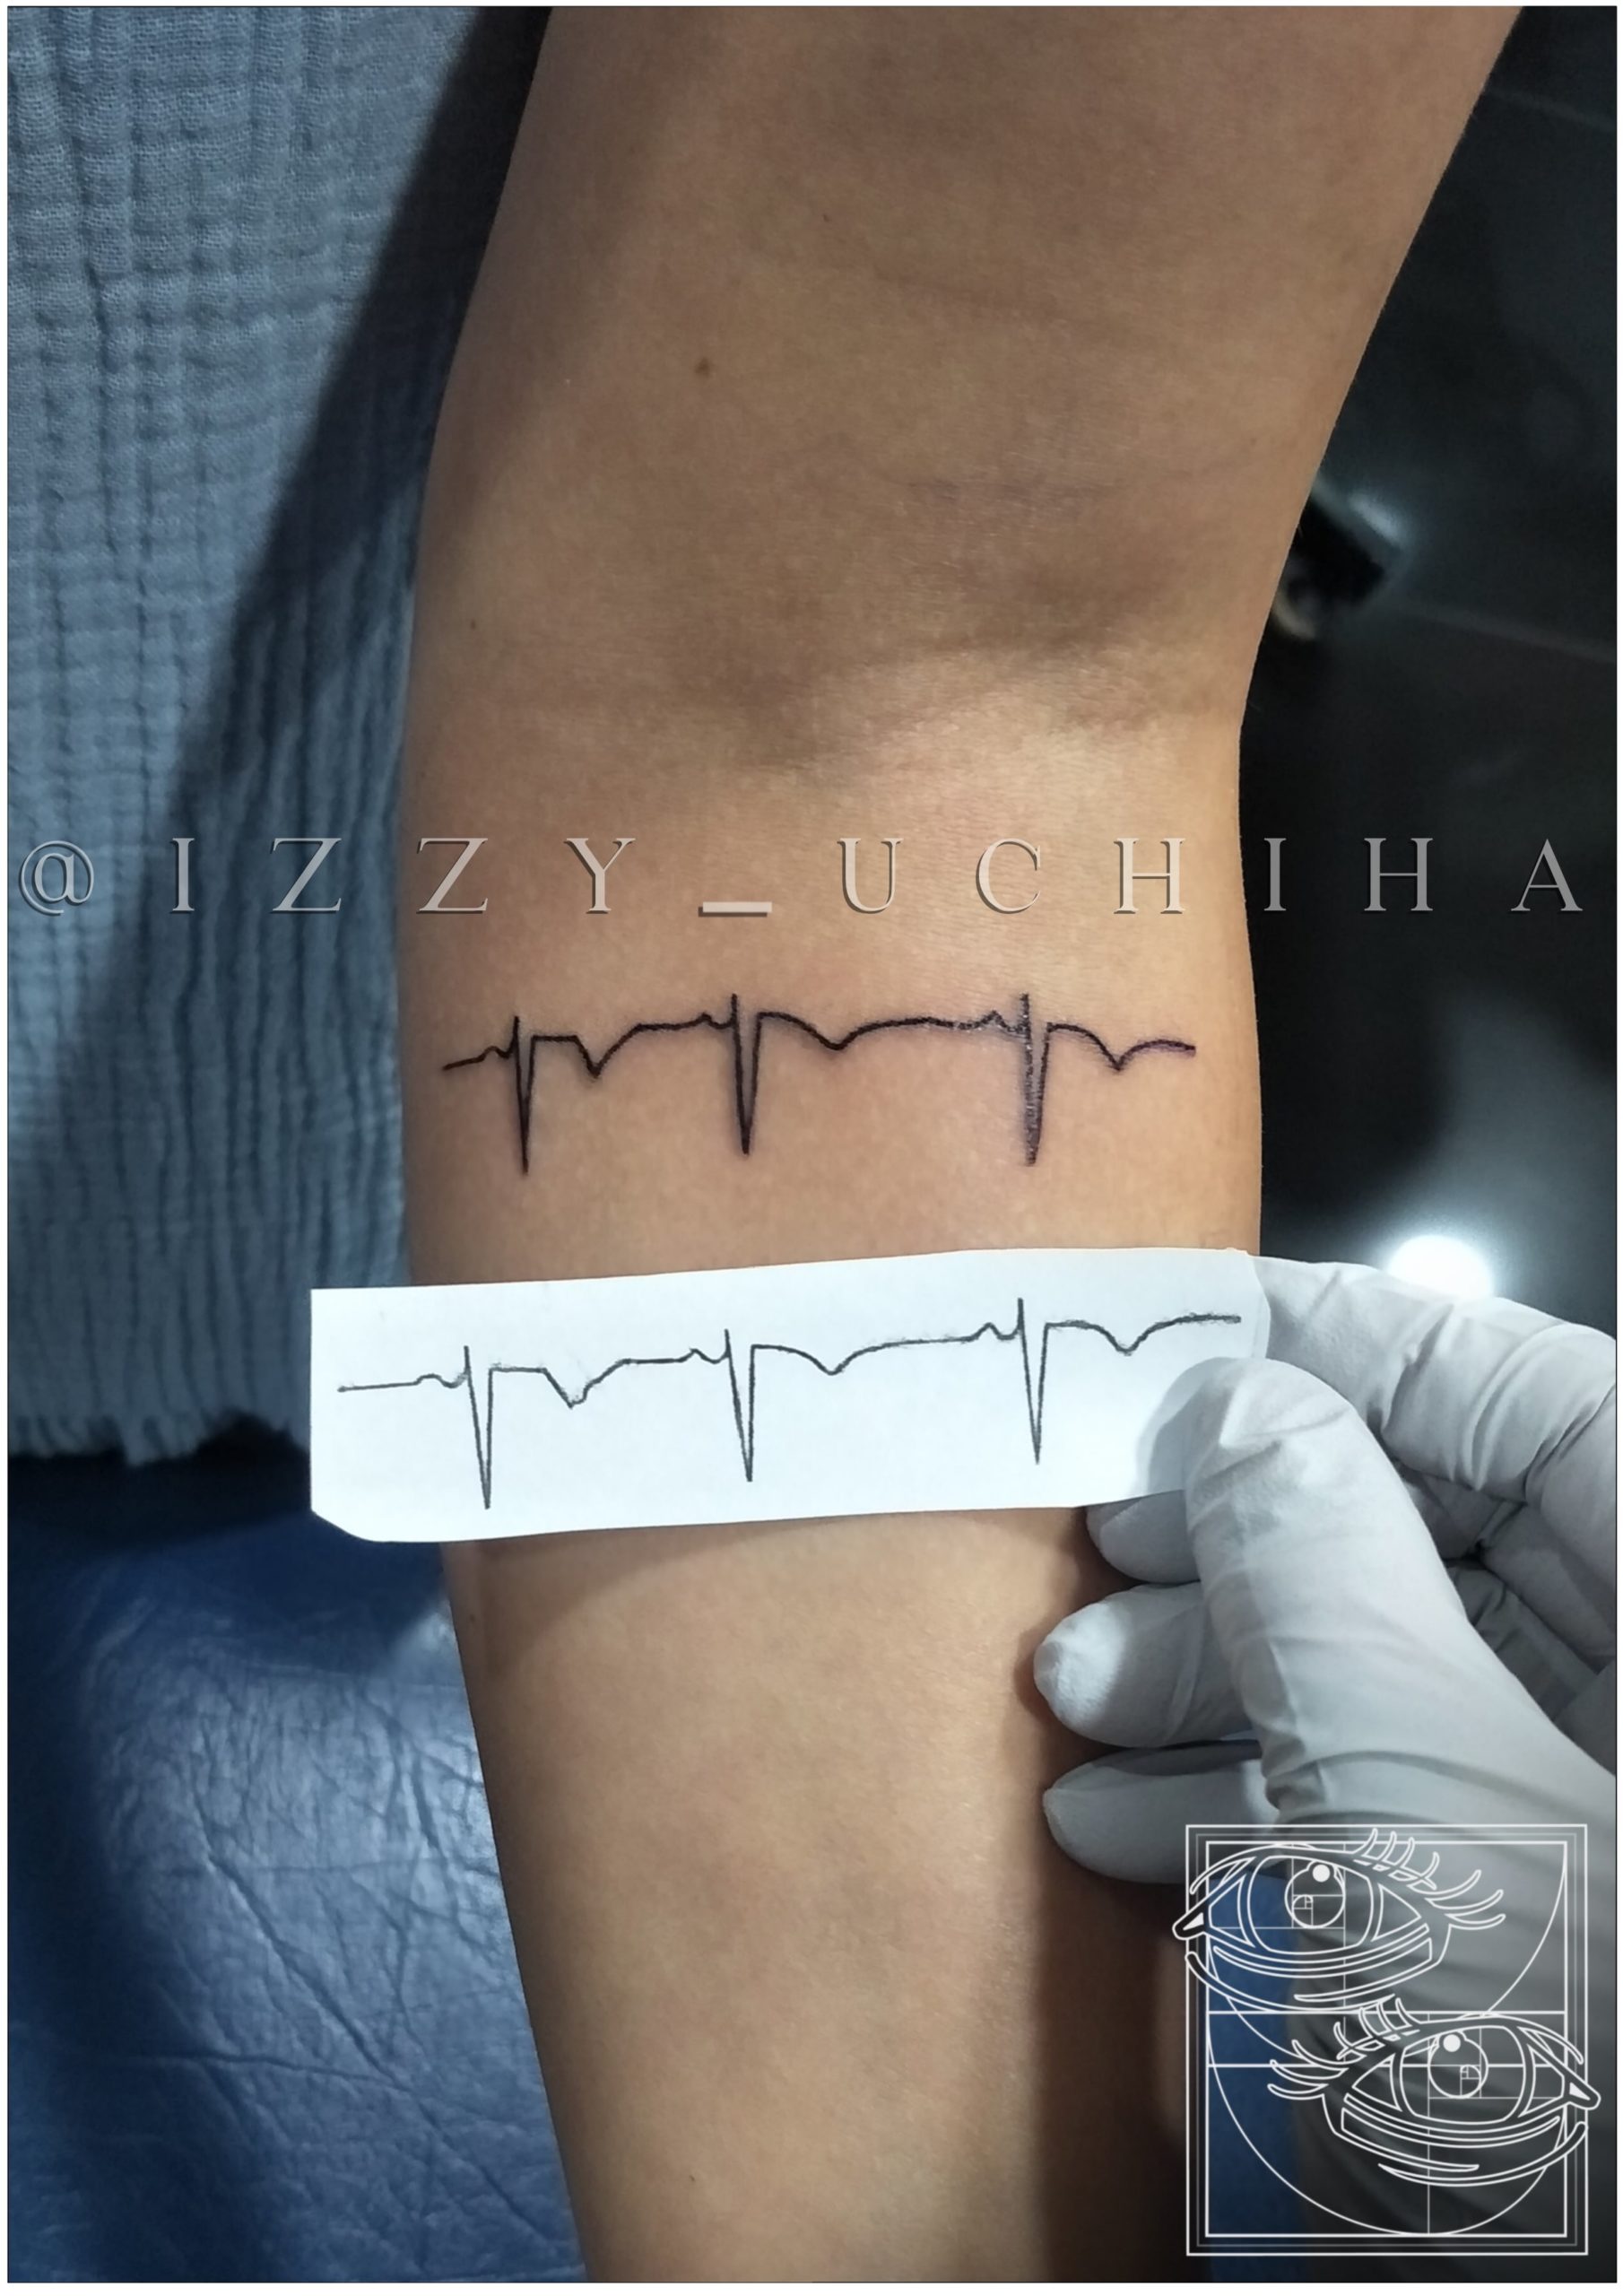 Izzy Uchiha - Heart Beat